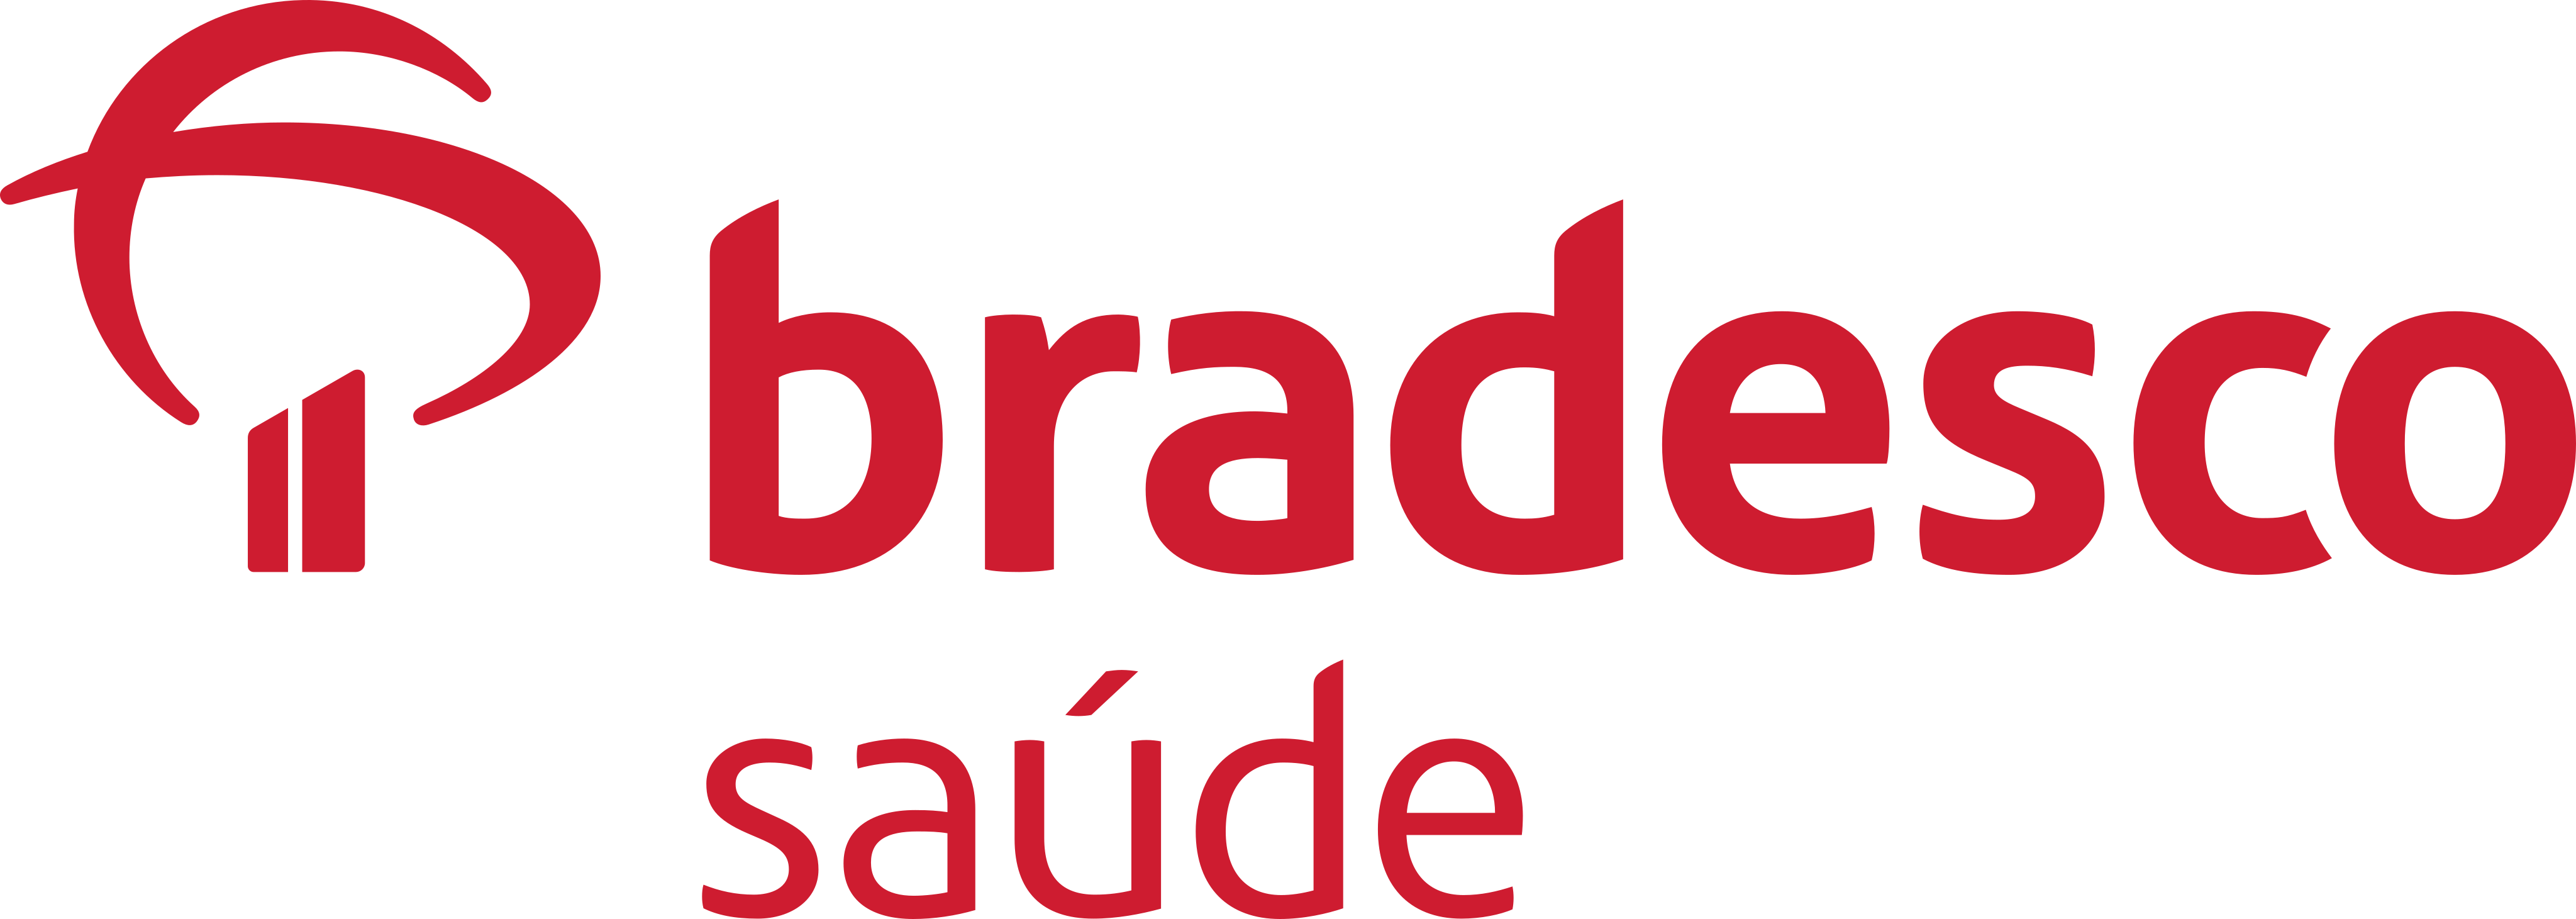 Logo do plano BRADESCO